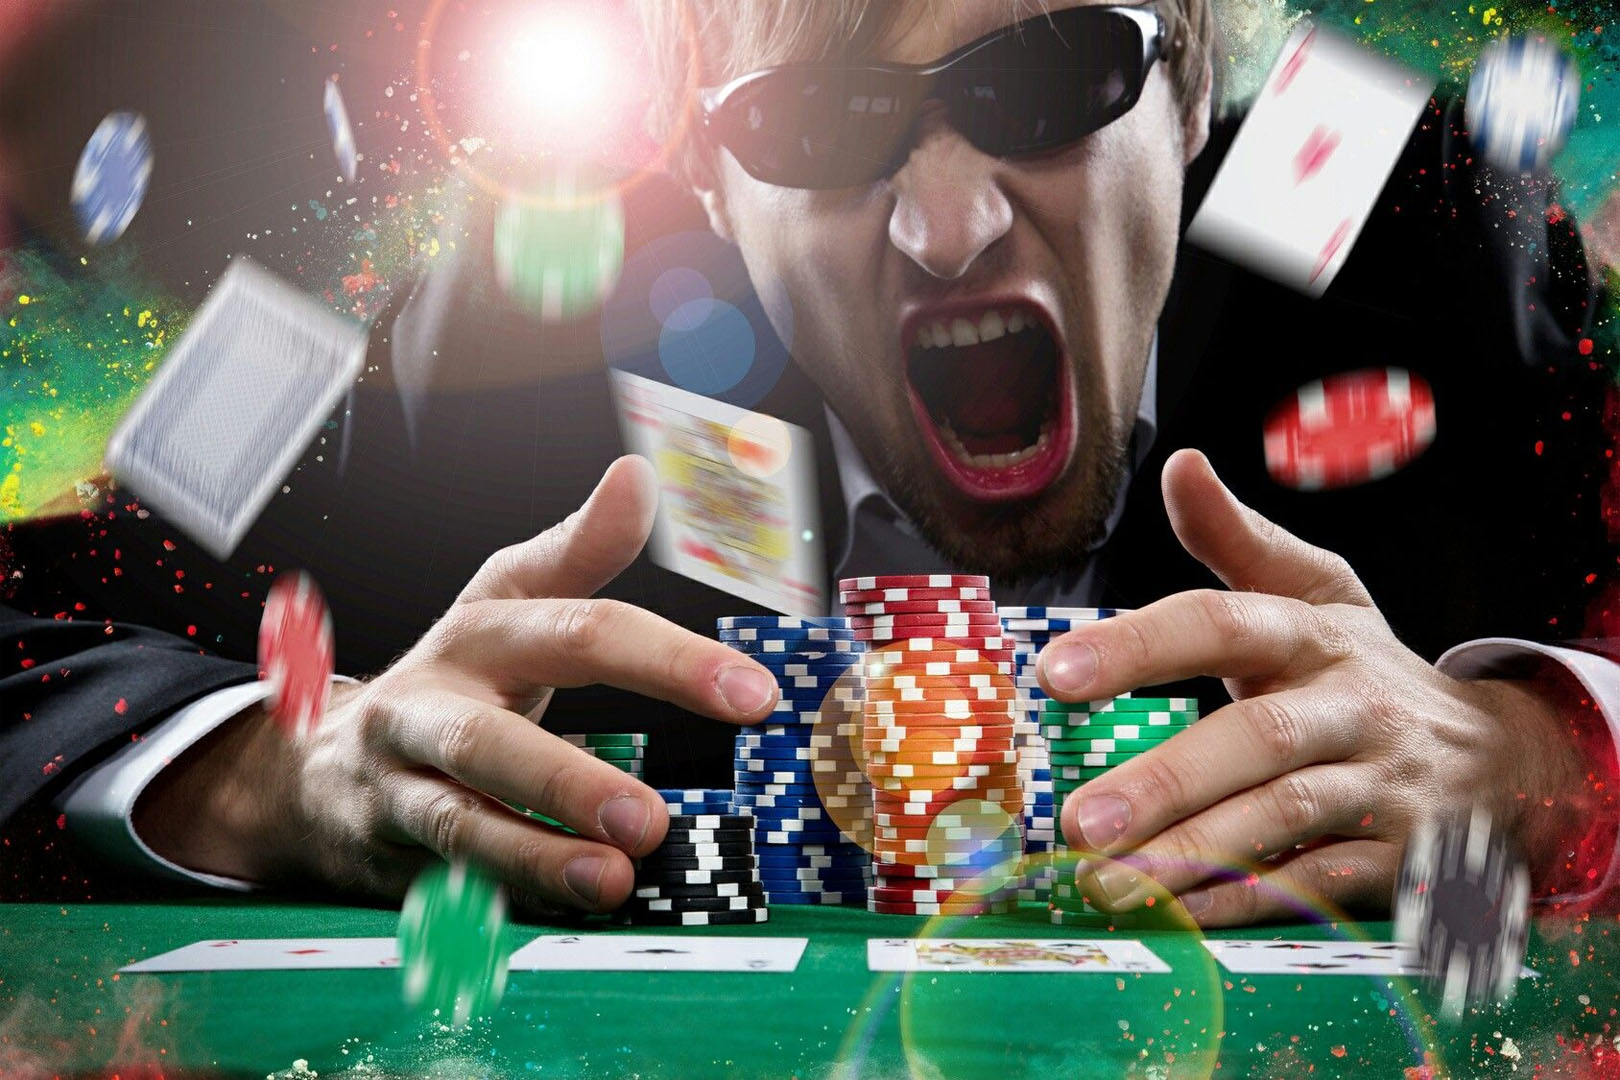 Азартные игры azart games casino pp ru. Покер. Выигрыш в казино. Игровая зависимость. Азартные игры в интернете.